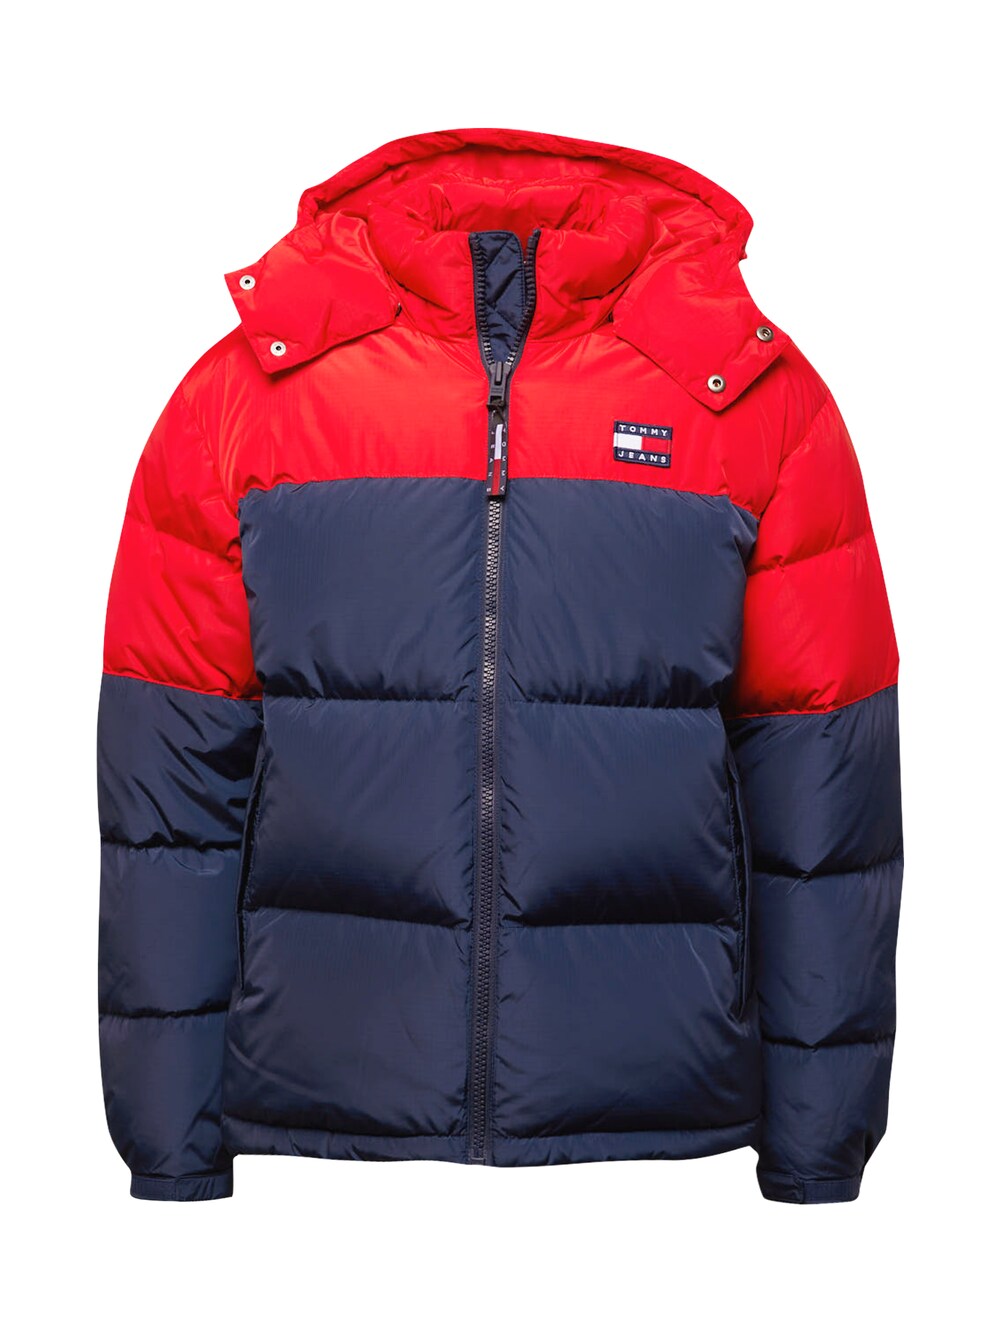 Зимняя куртка Tommy Hilfiger Alaska, темно-синий/огненно-красный